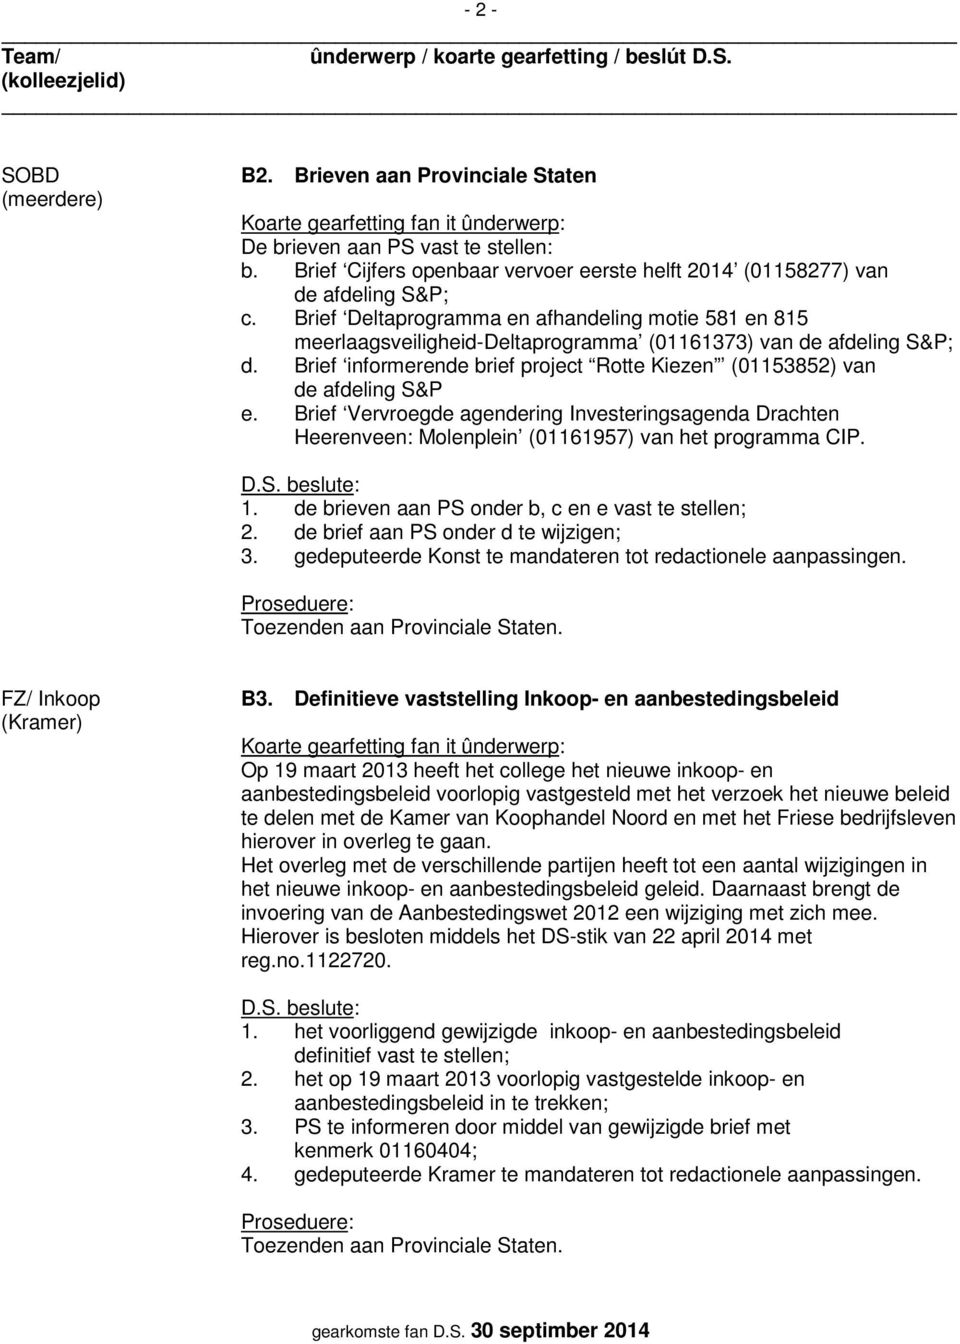 Brief informerende brief project Rotte Kiezen (01153852) van de afdeling S&P e. Brief Vervroegde agendering Investeringsagenda Drachten Heerenveen: Molenplein (01161957) van het programma CIP. 1.